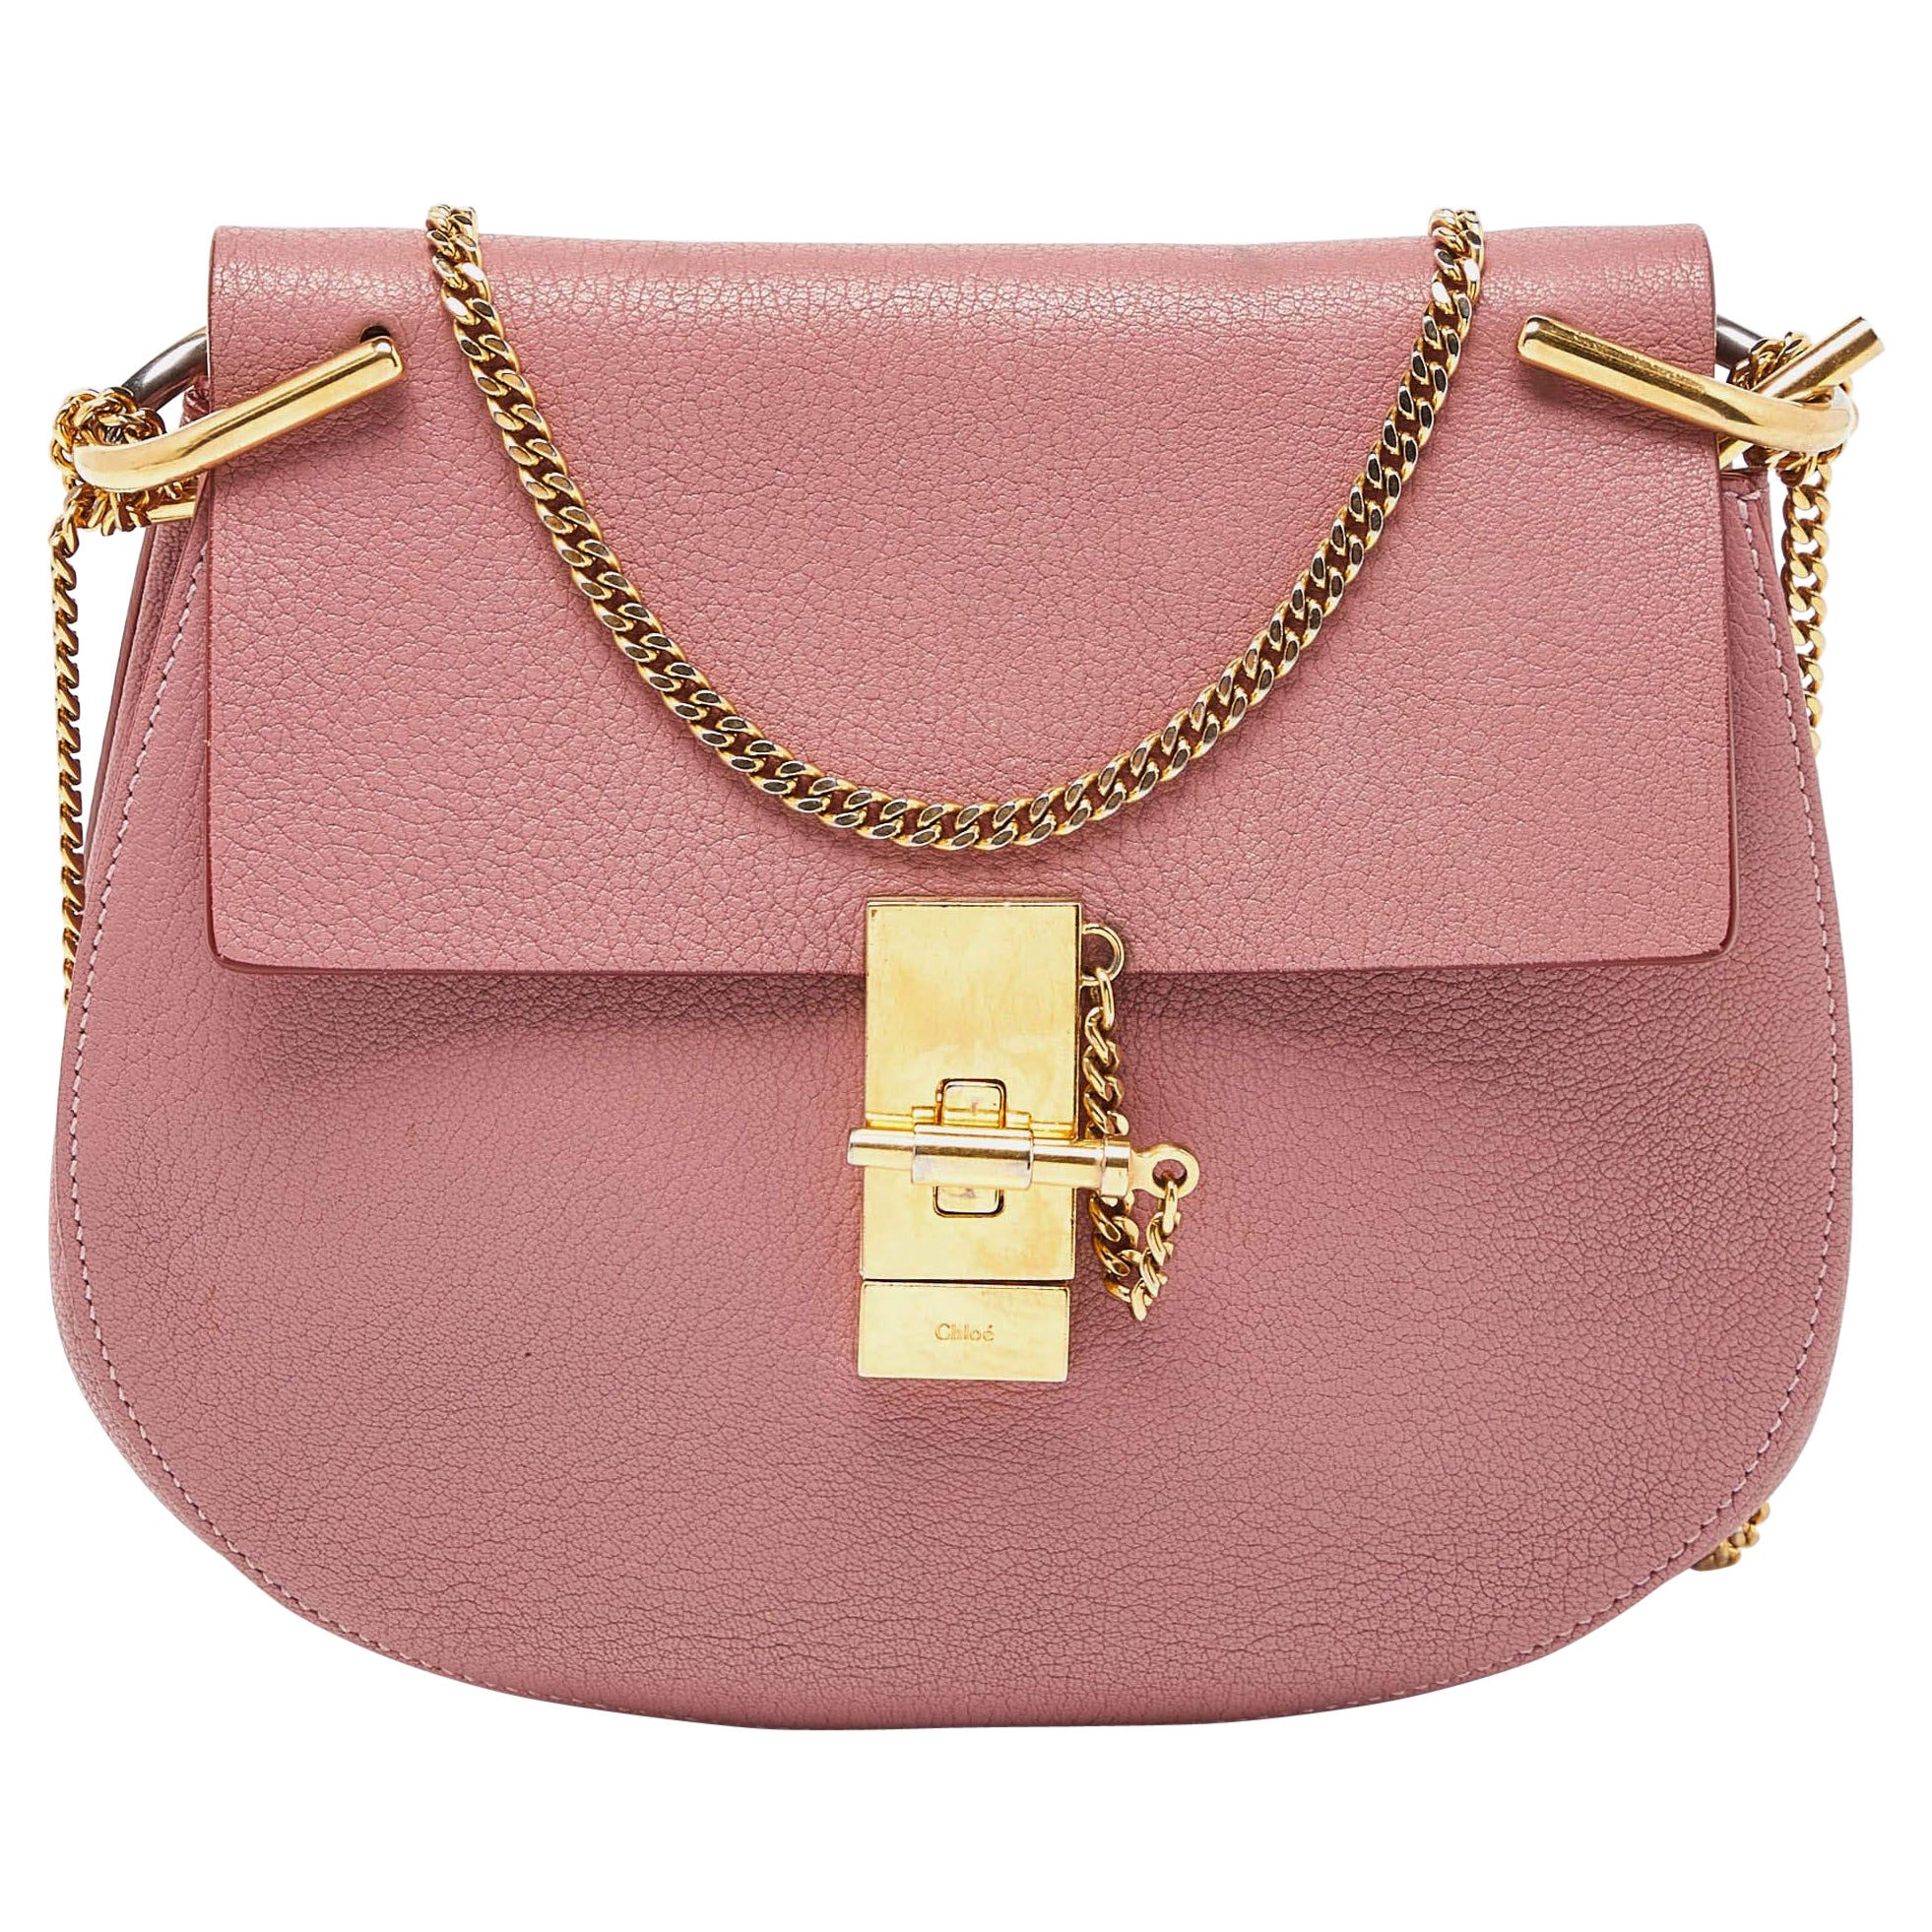 Chloe Pink Leather Medium Drew Shoulder Bag For Sale